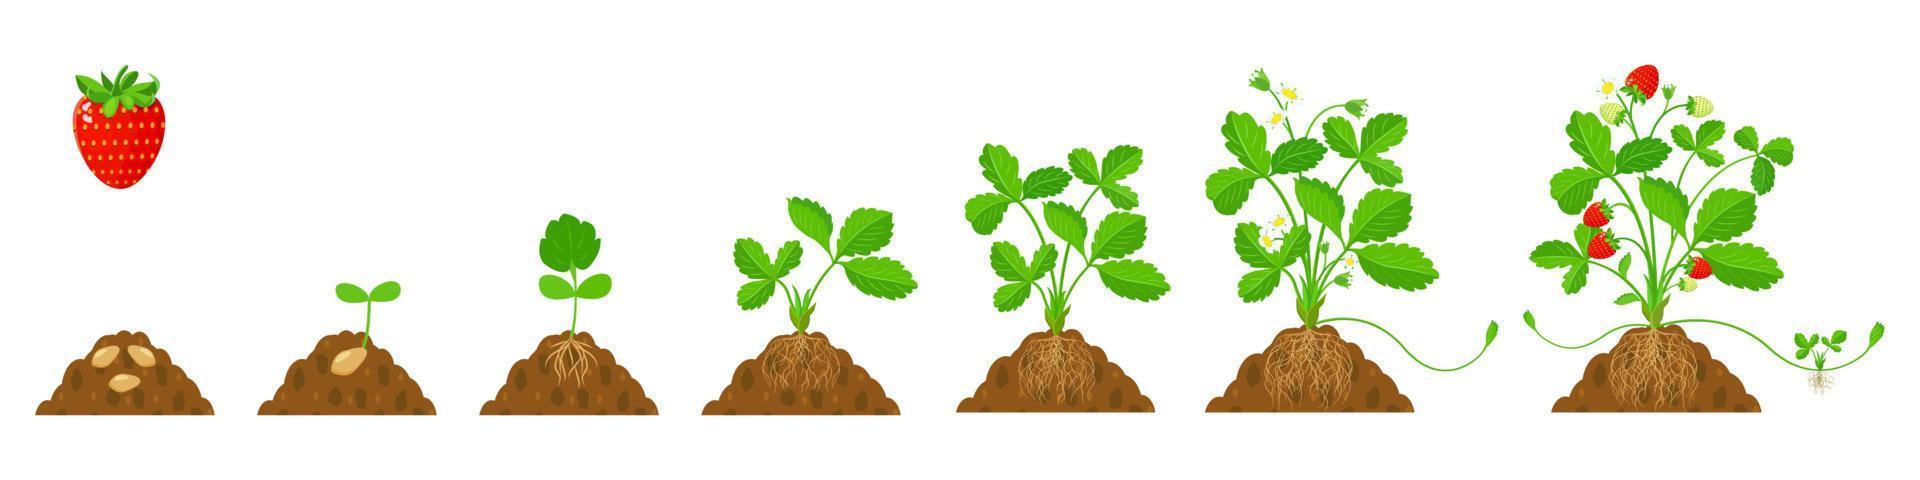 cultivo de morangos no solo com sistema radicular em estágios. ilustração plana do ciclo de crescimento da cultura. vetor